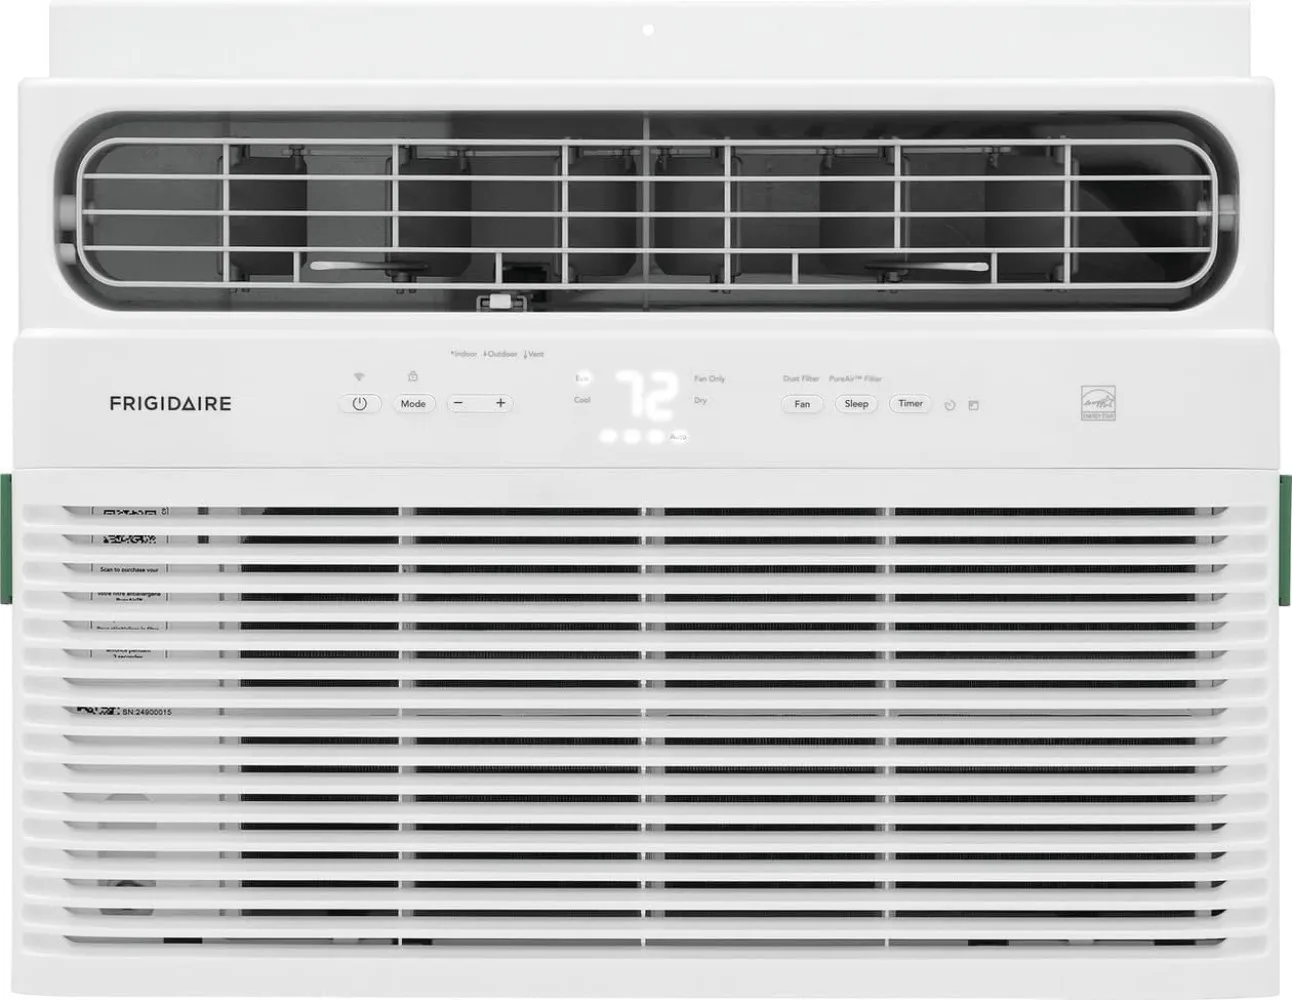 

FHWW104WD1 Window Air Conditioner, 10,000 BTU, White